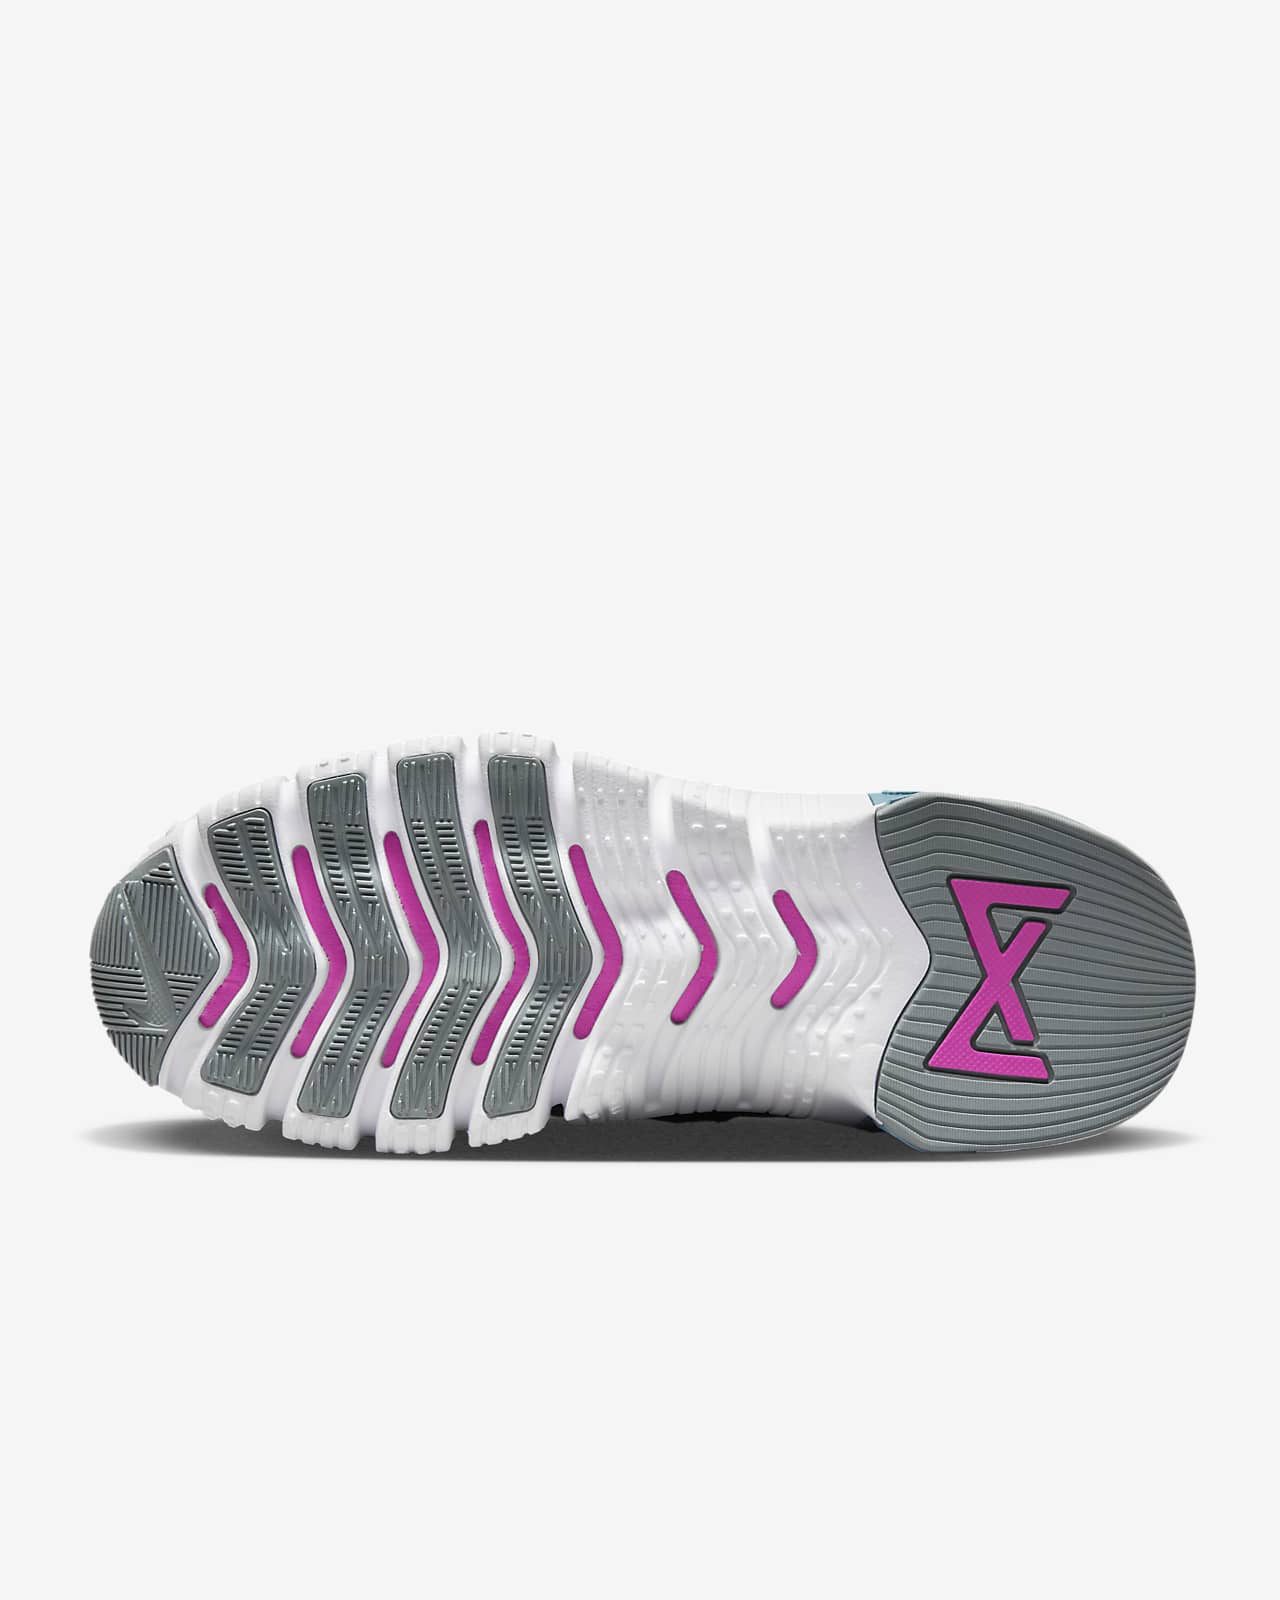 NIKE W-zapatillas NIKE FREE METCON 4 PRM para mujer, deportivas para  correr, novedad, originales - AliExpress